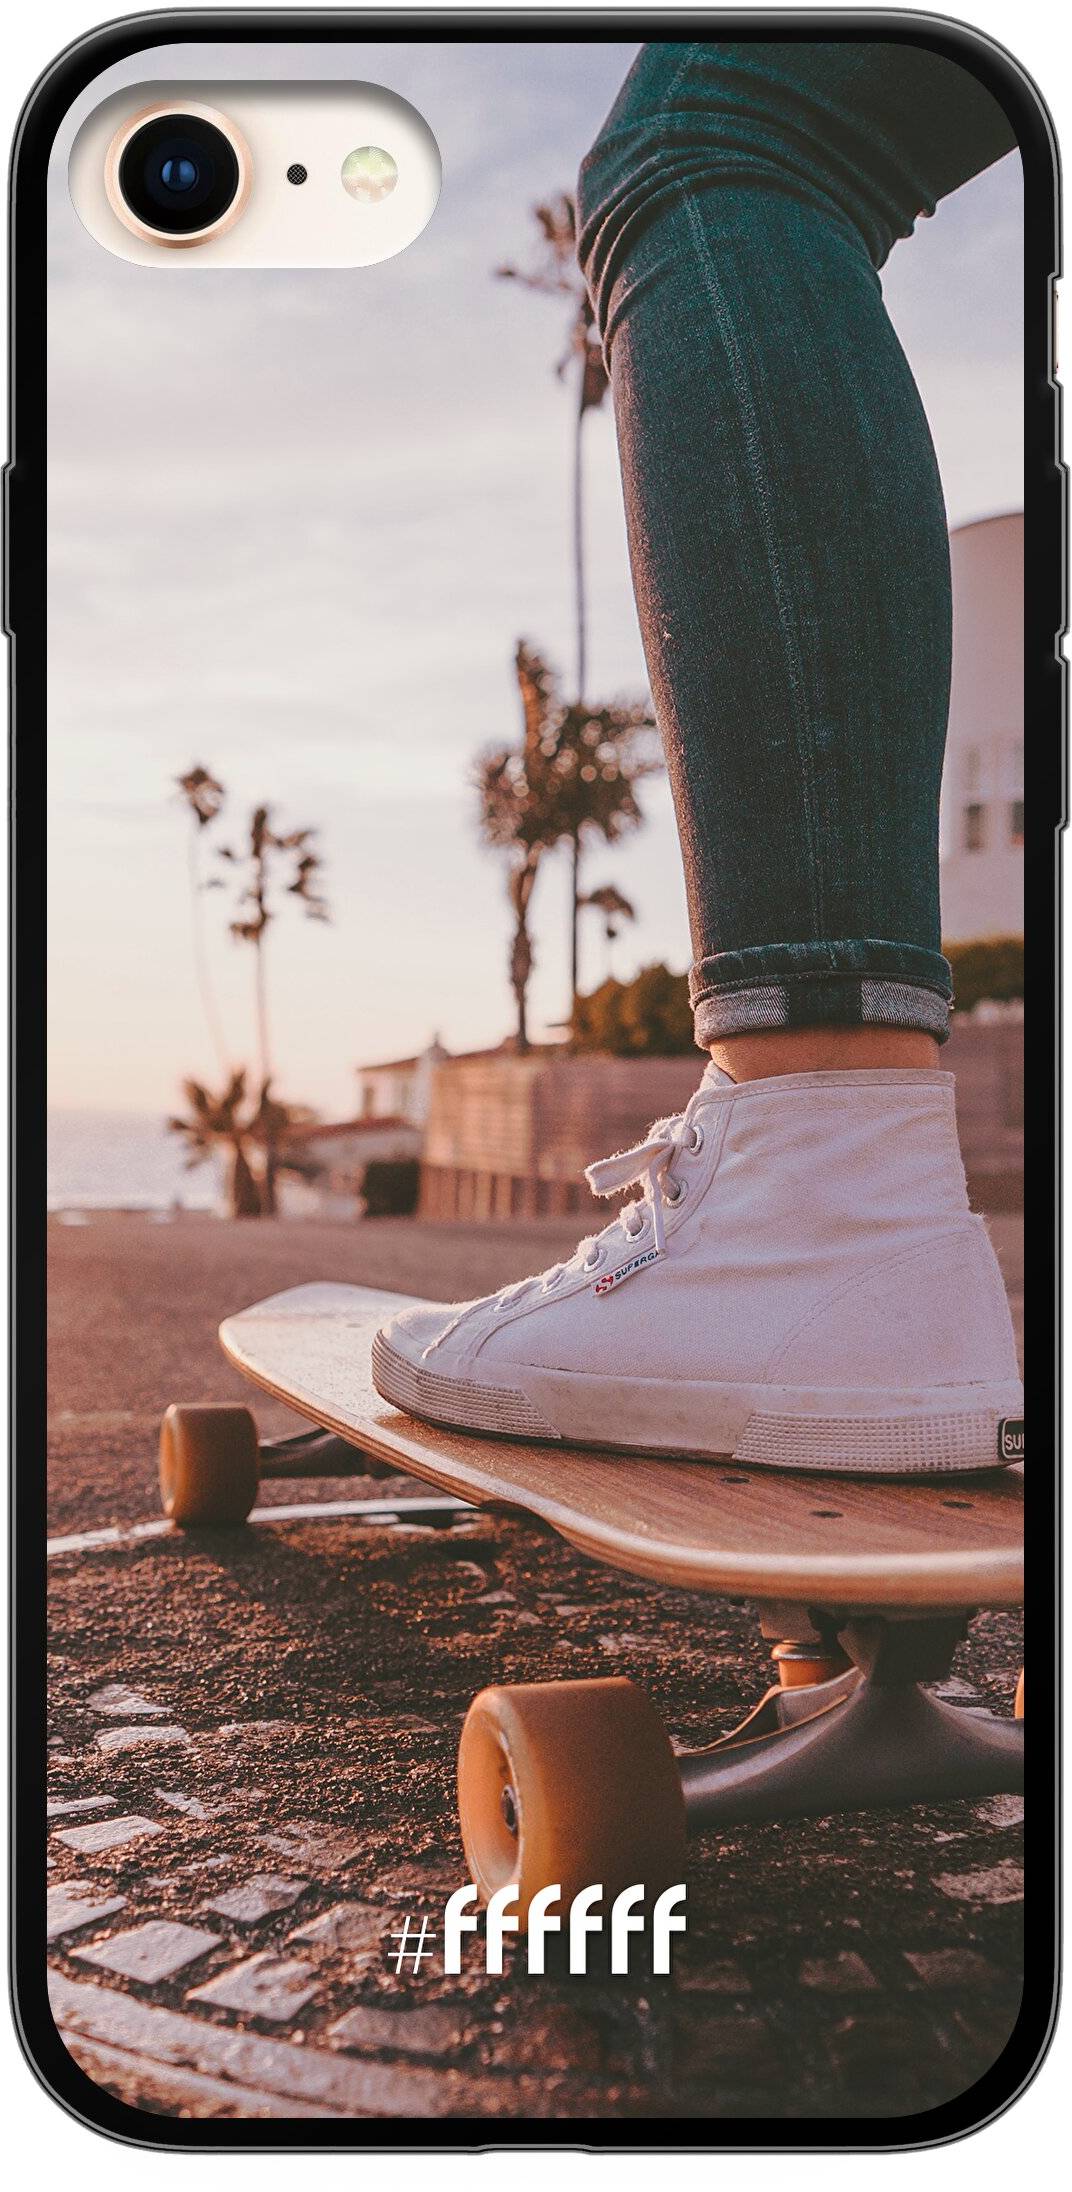 Skateboarding iPhone 7